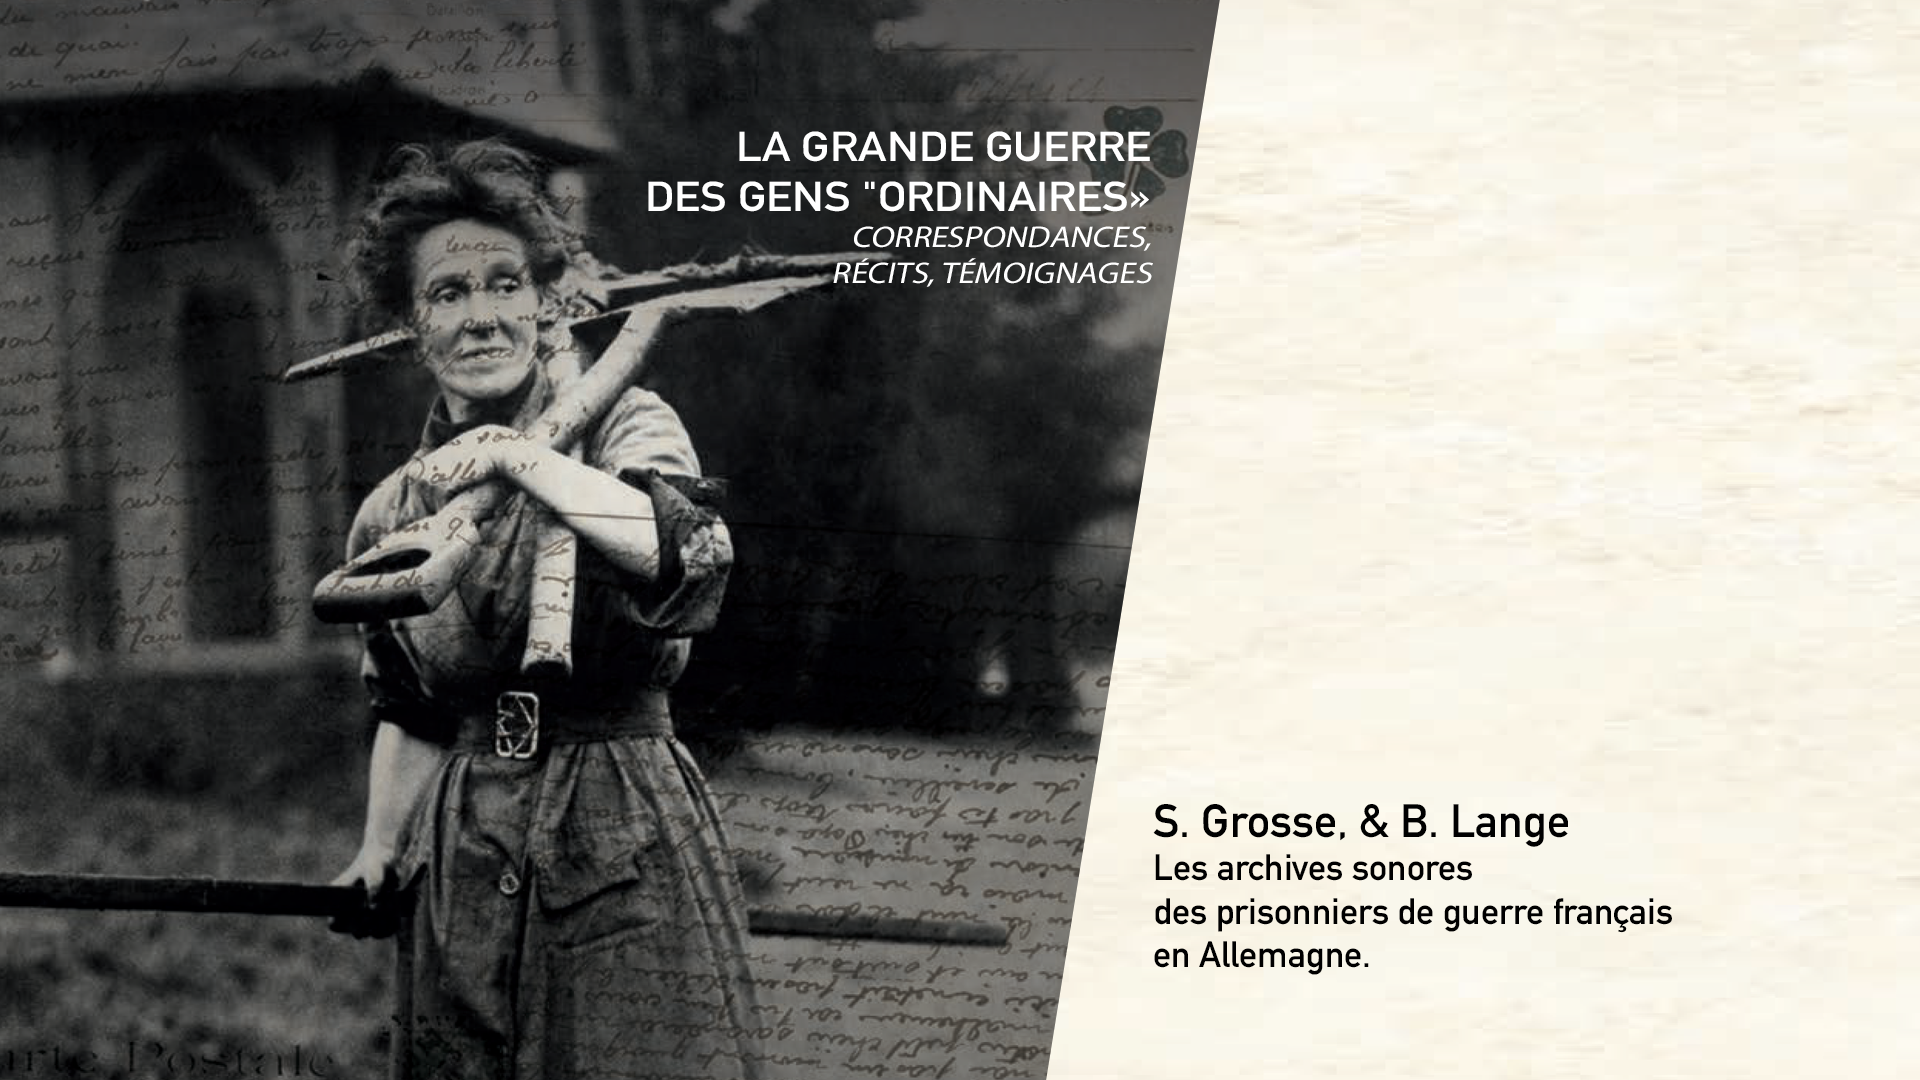 S. Grosse, B. Lange - Les archives sonores des prisonniers de guerre français en Allemagne.